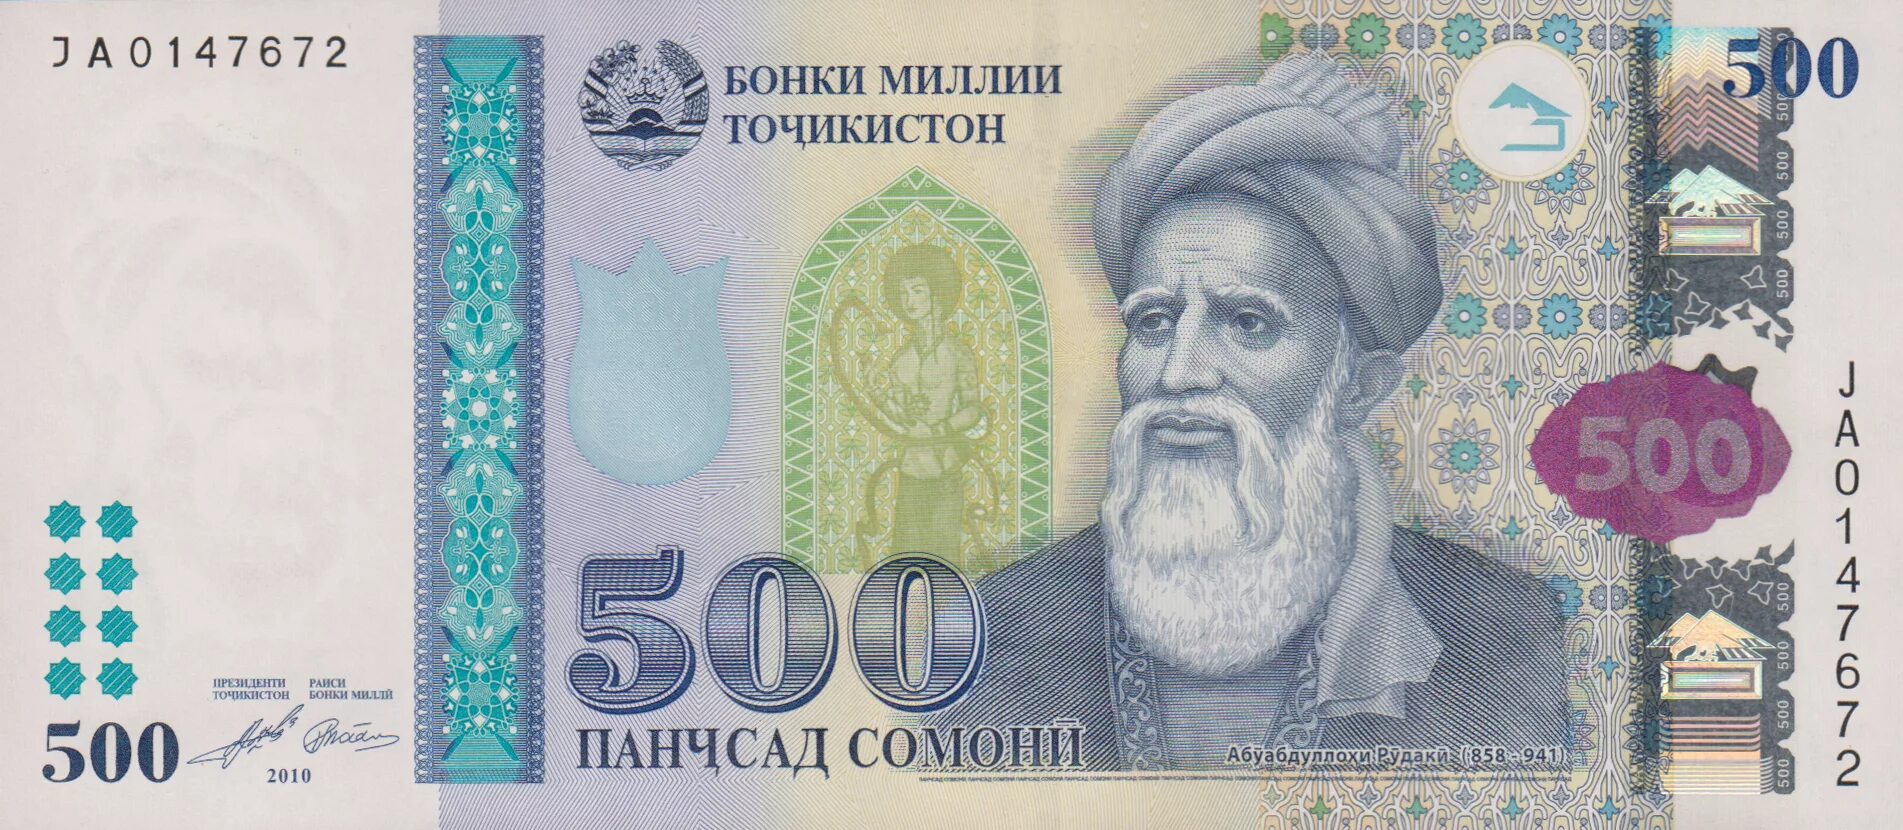 Купюра Таджикистана 500 Сомони. Деньги Таджикистана 500 Сомони. Купюры Сомони 500 Сомони. Пули точики 500 сомона. Телефон точикистон